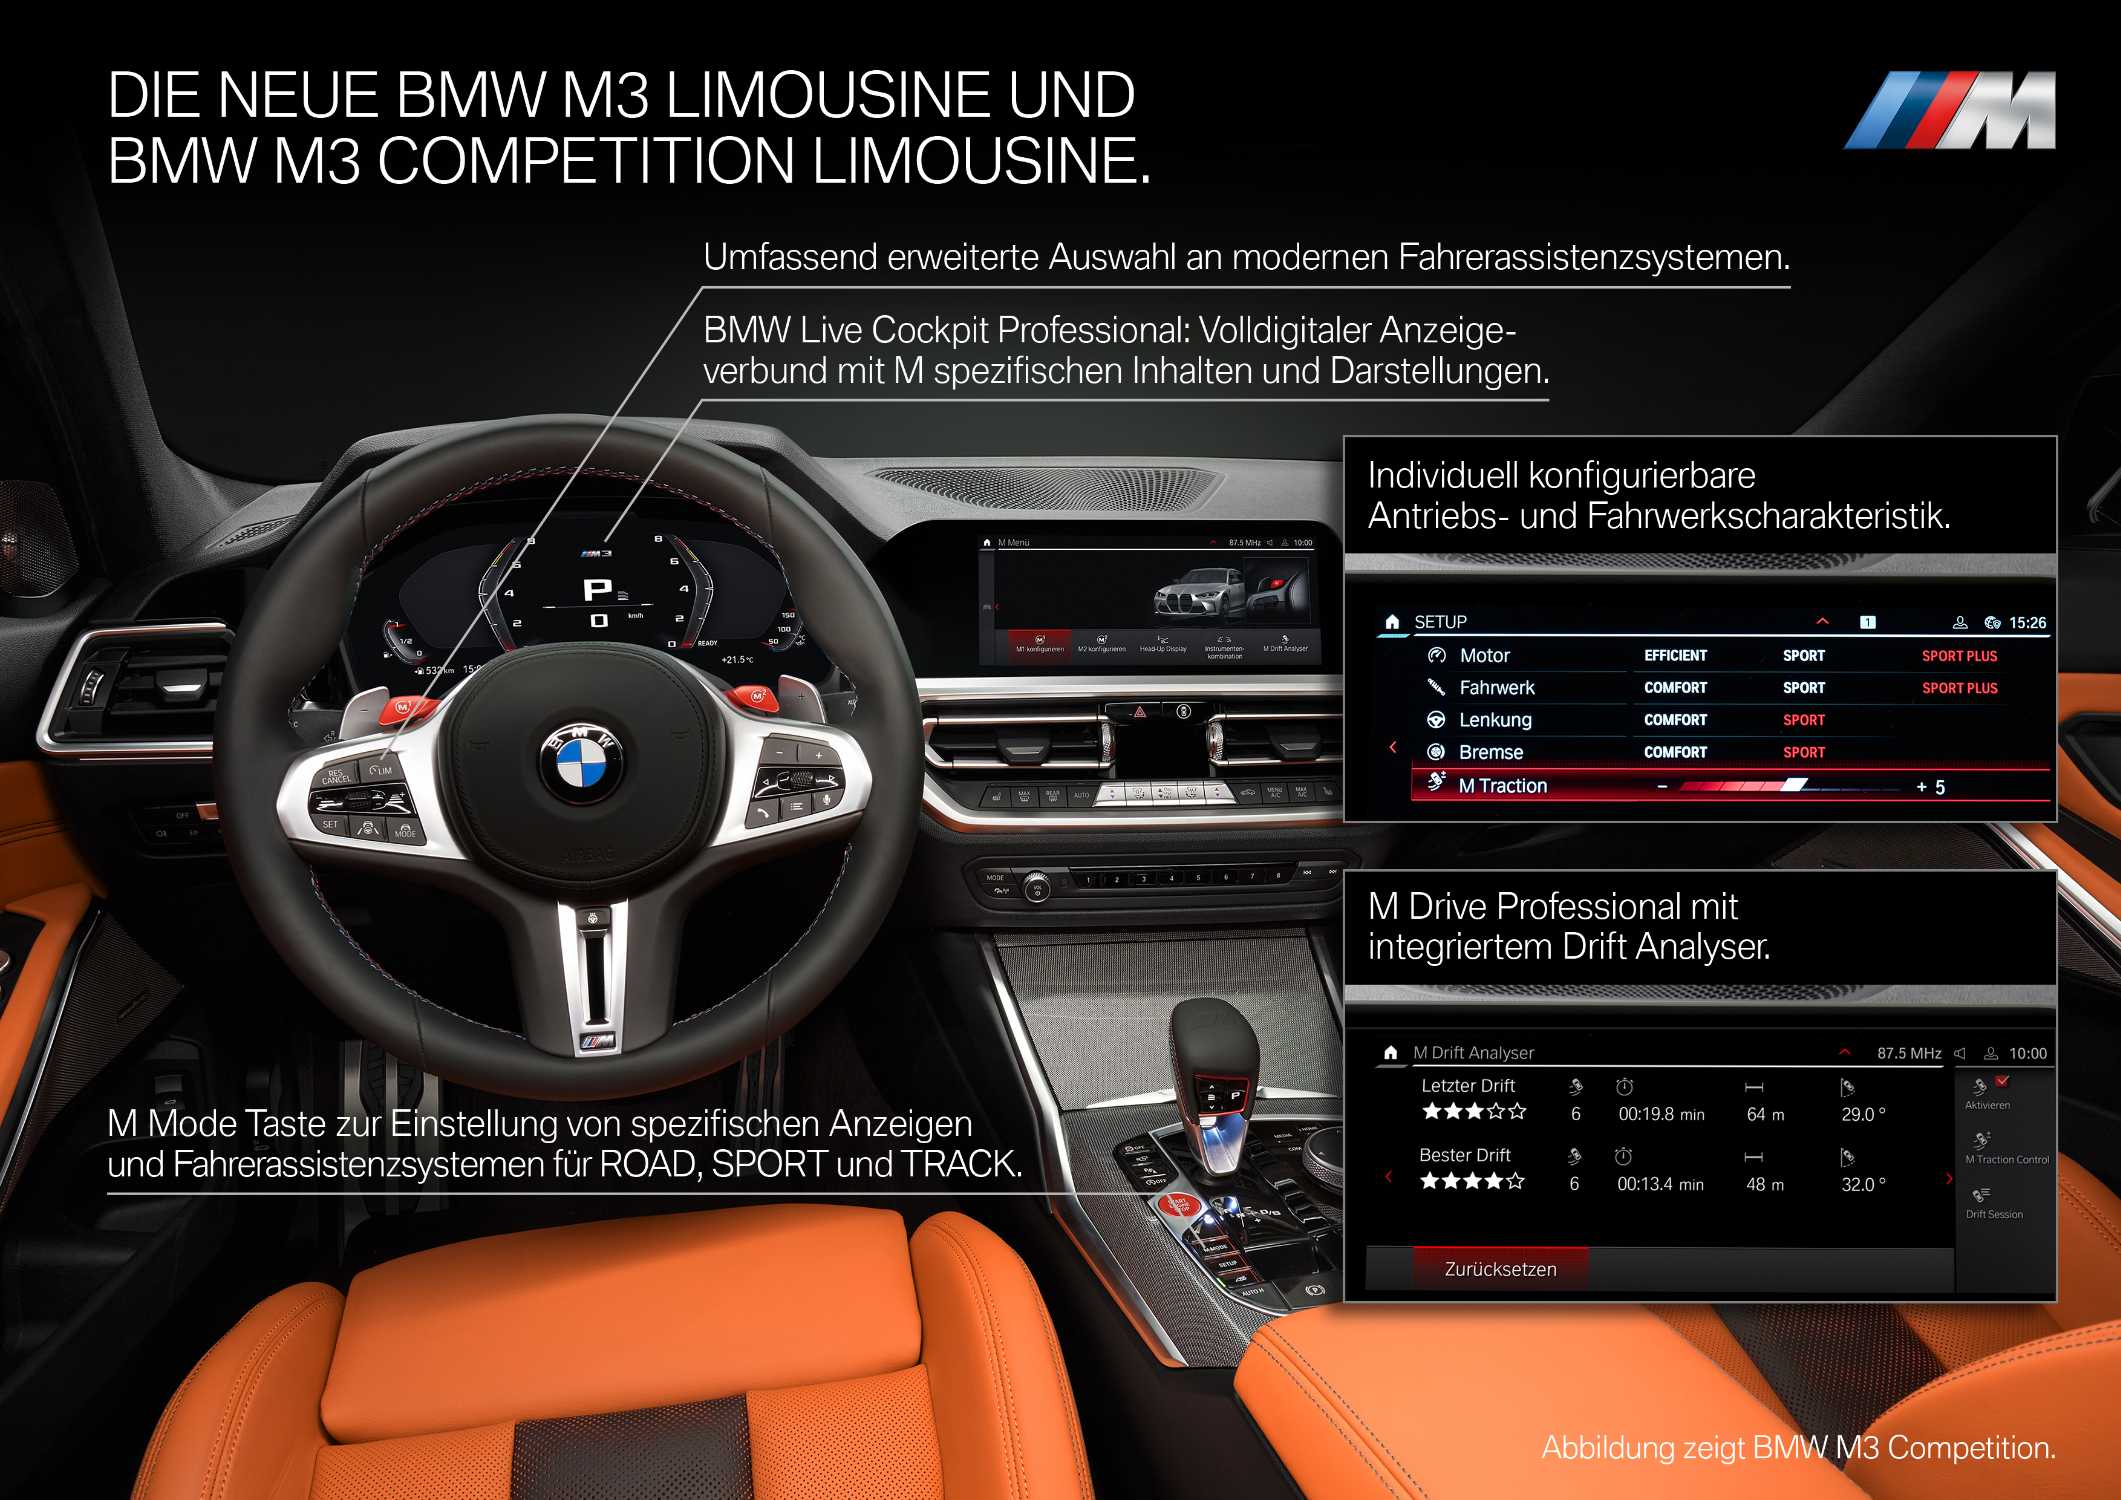 Die neue BMW M3 Competition Limousine (09/2020).